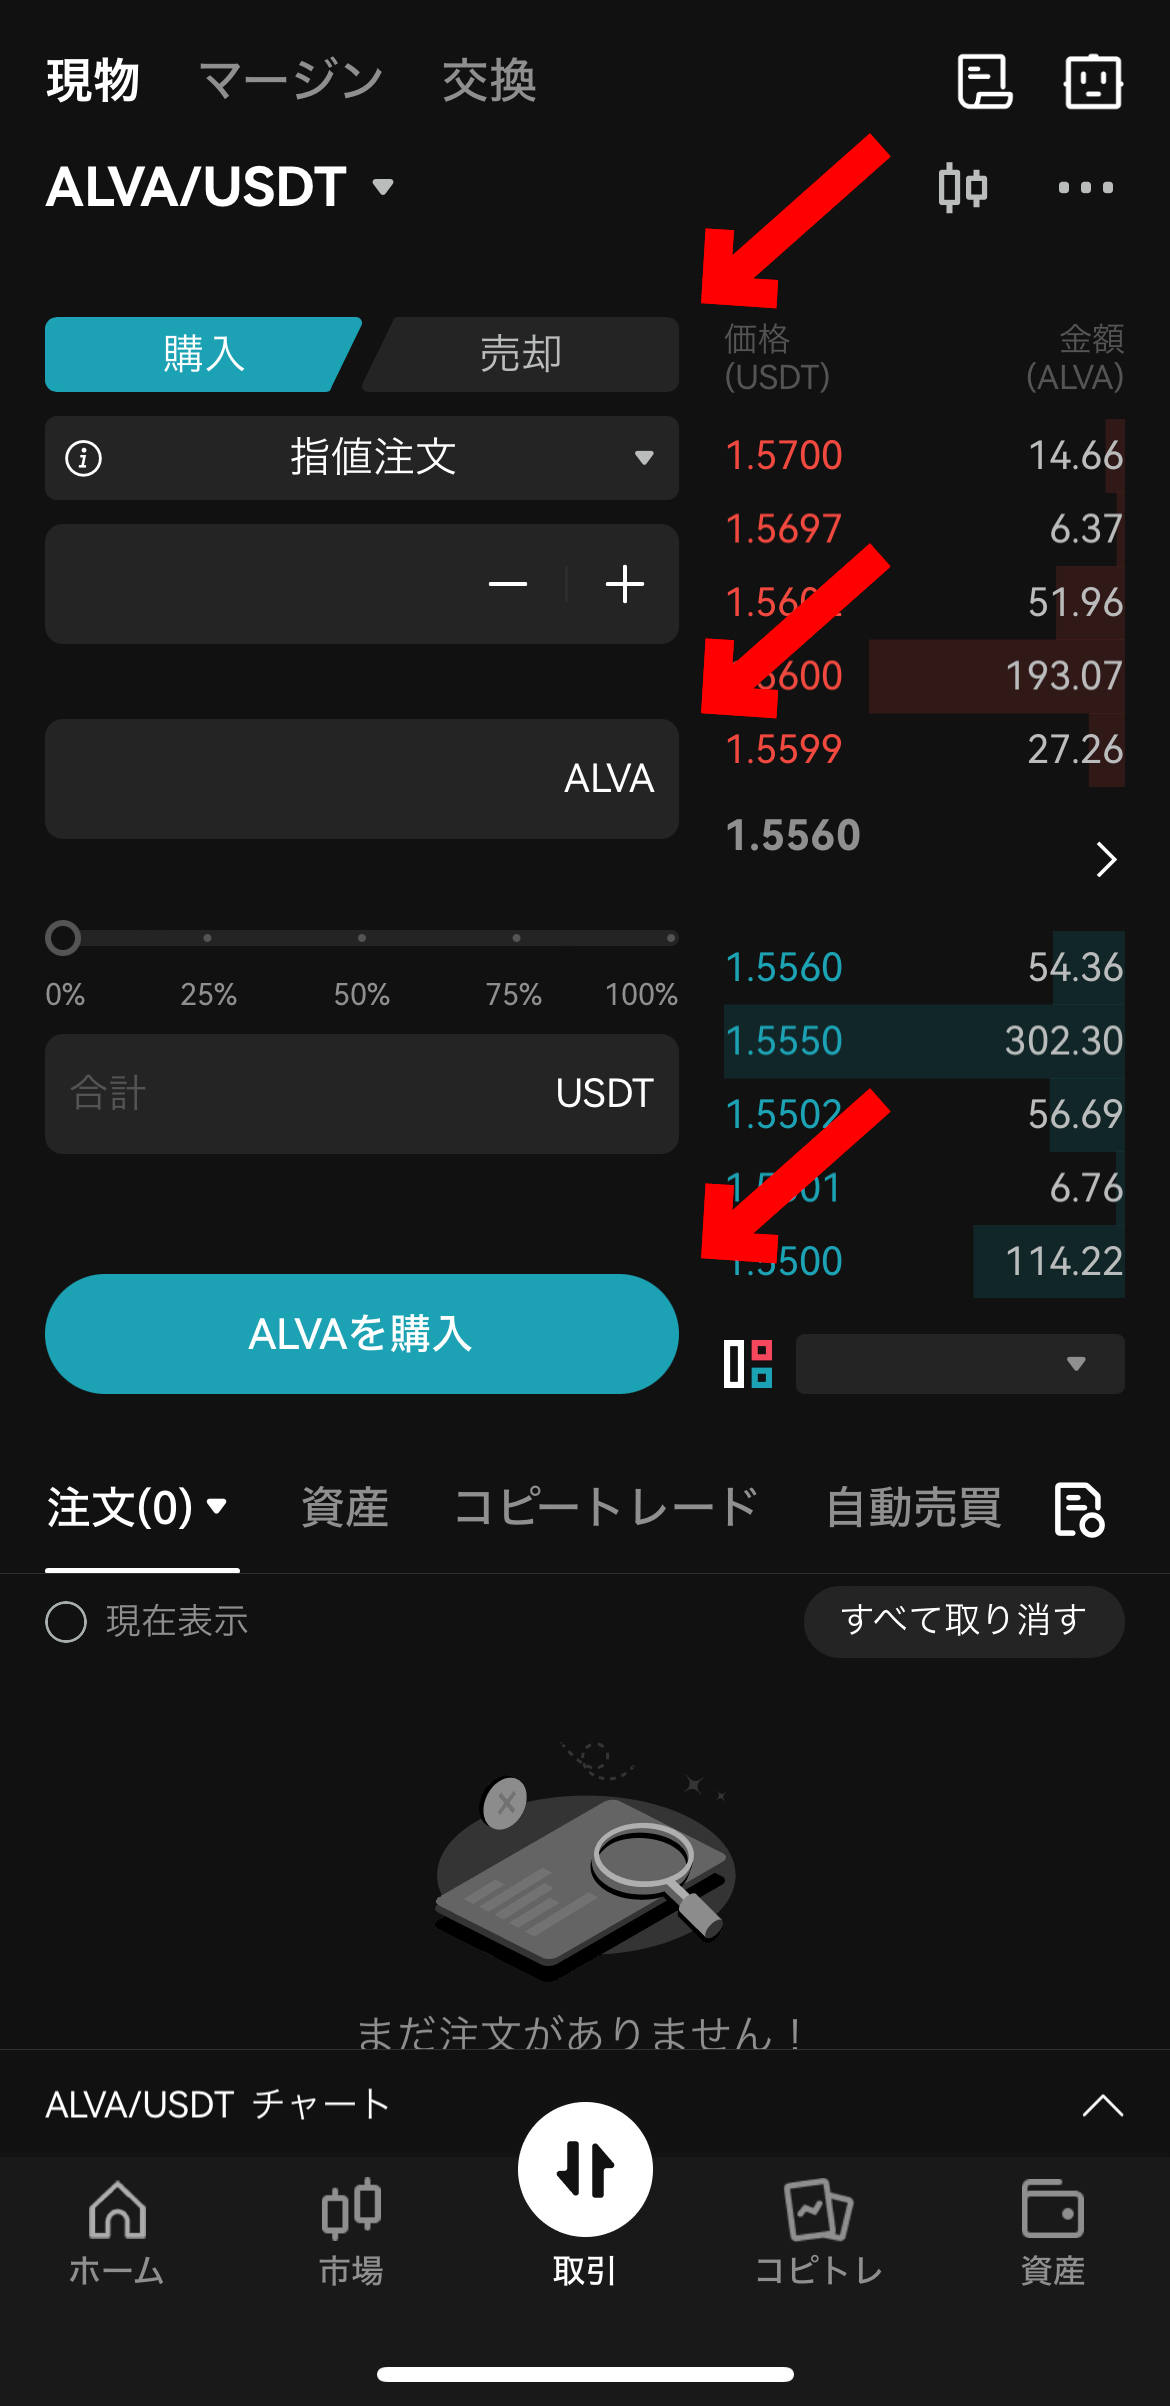 【動画あり】仮想通貨 Alvara (ALVA)の買い方【アルバラ】【Bitget】【ビットゲット】【取引所】【暗号資産】ALVAを購入を選択します